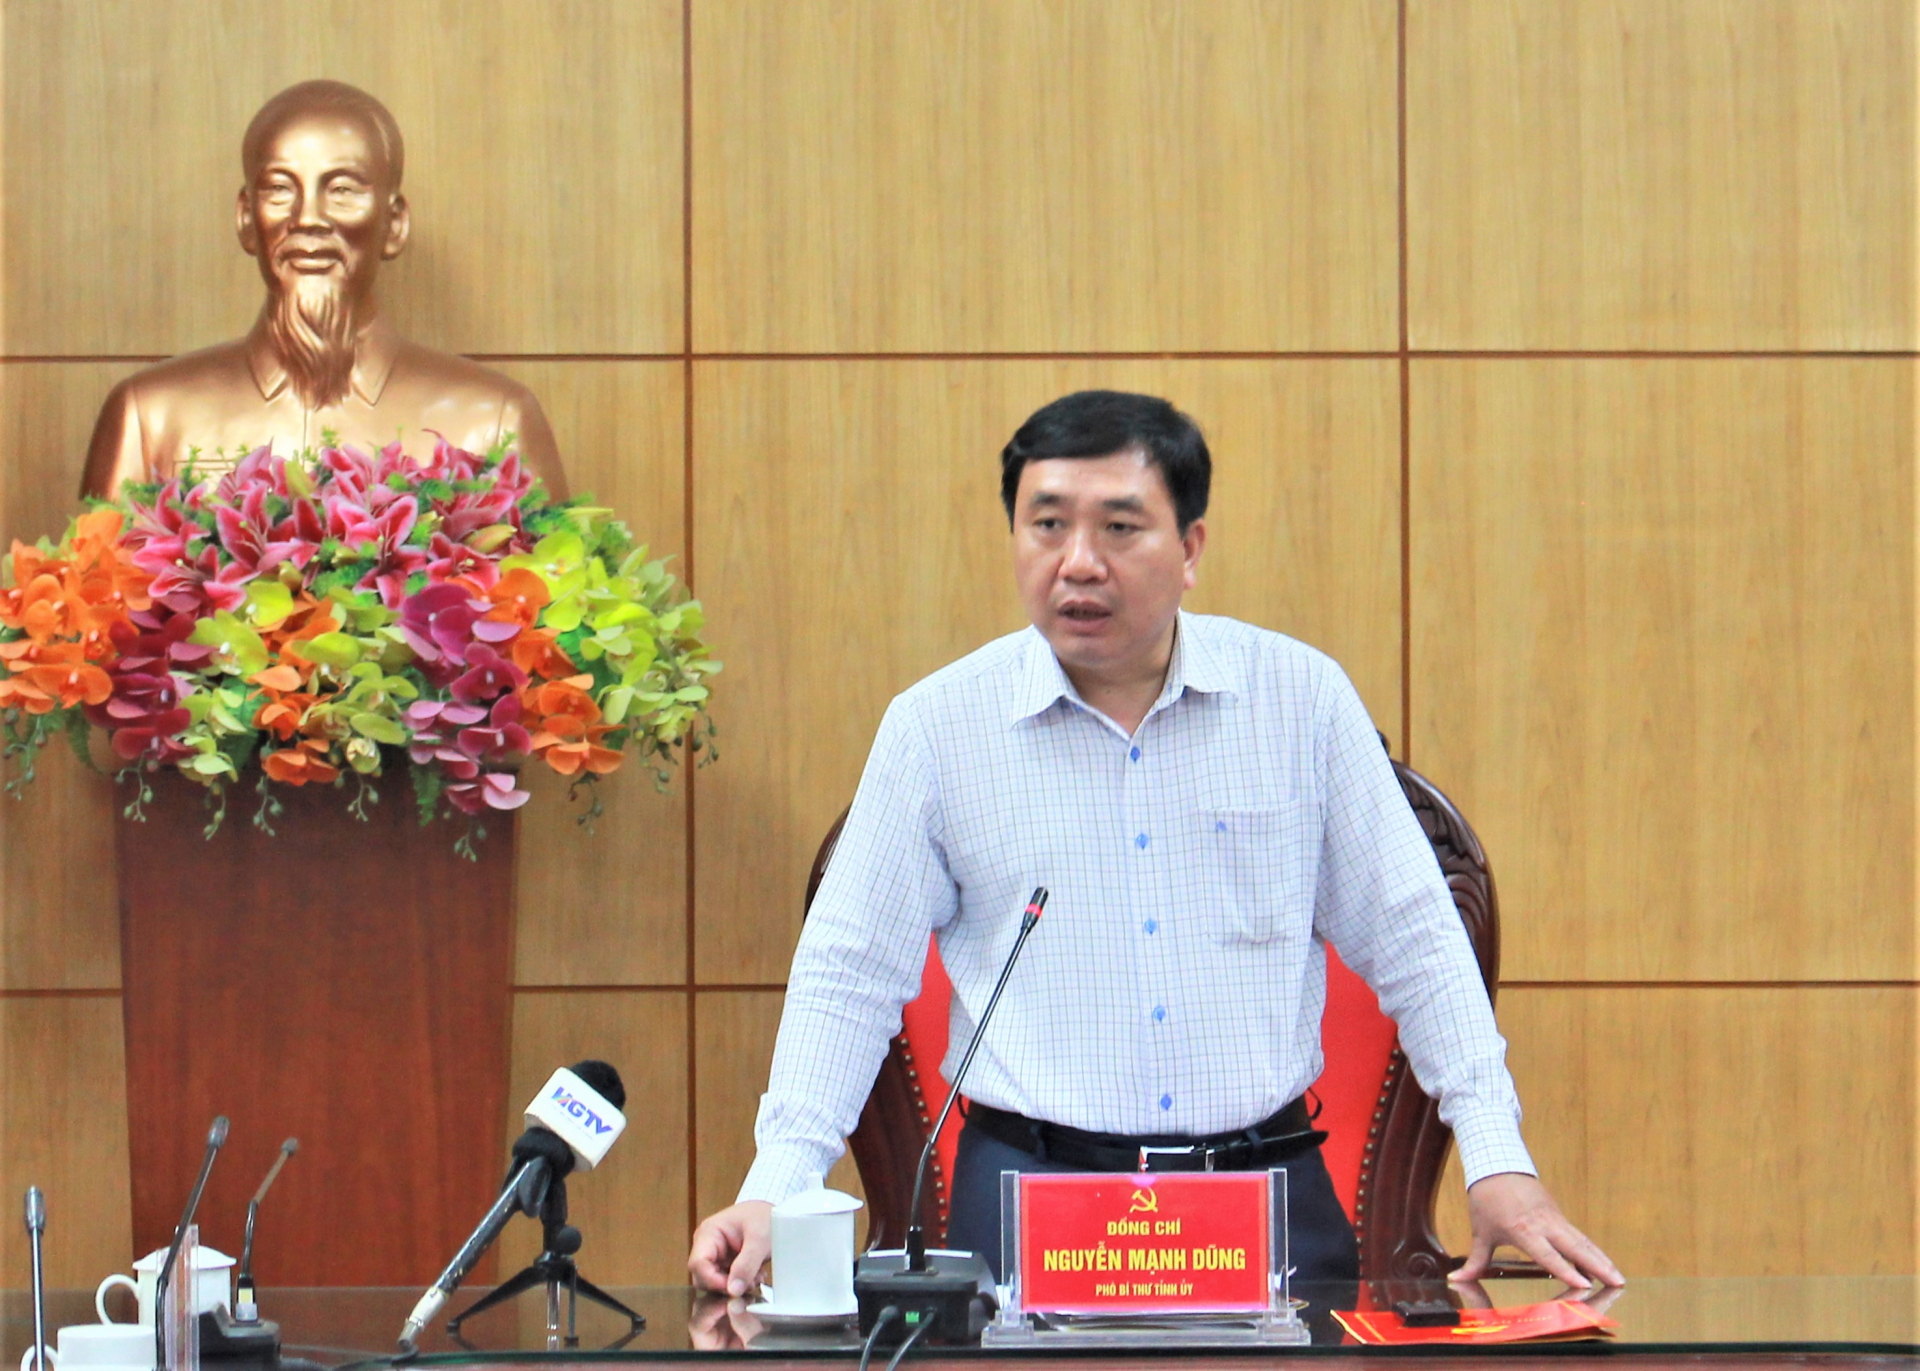 Phó Bí thư Tỉnh ủy Nguyễn Mạnh Dũng kết luận cuộc họp